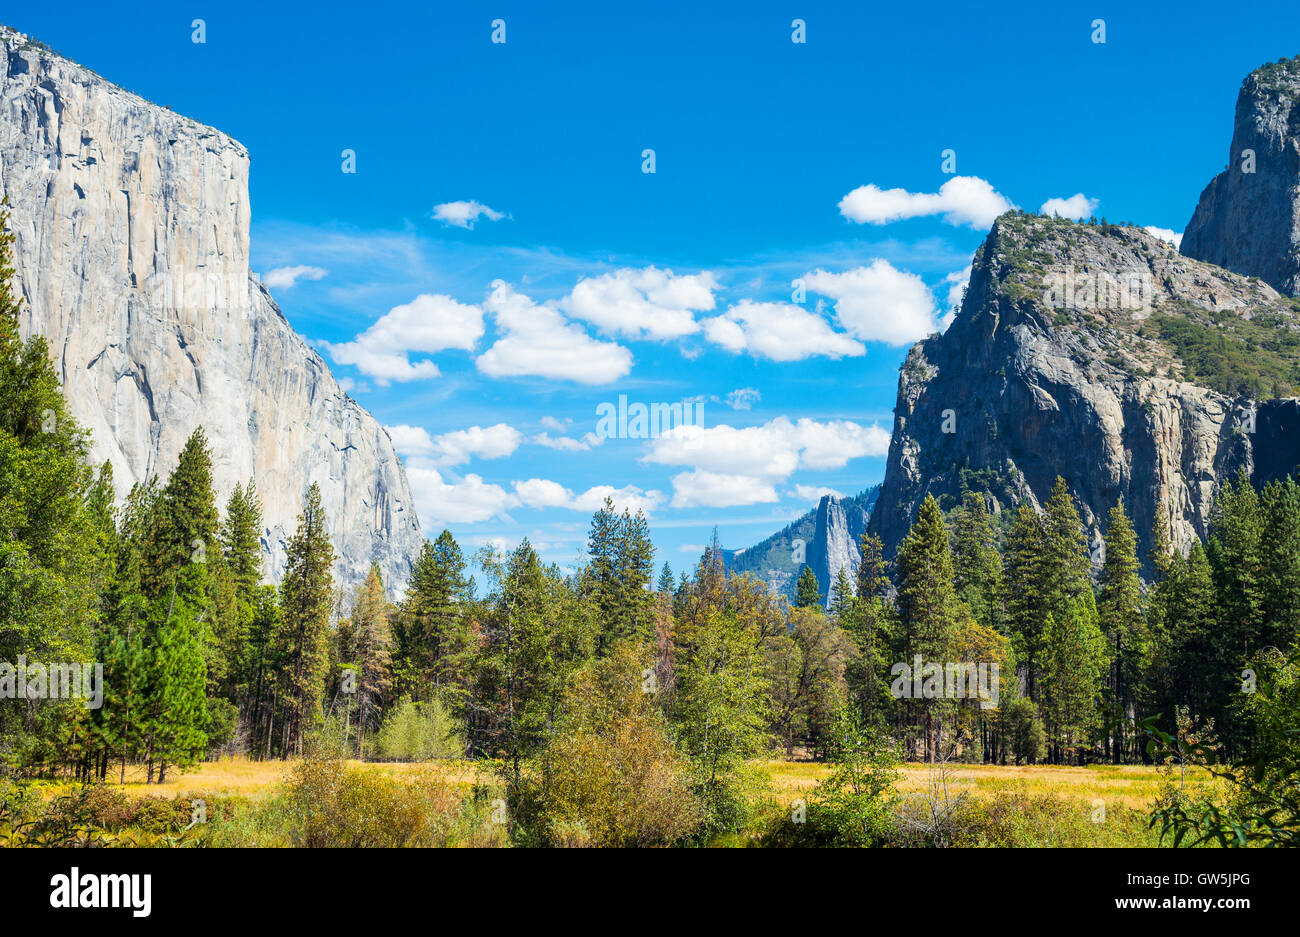 Yosemite National Park, Californie, vue panoramique de la vallée avec le El Capitan et la cathédrale Spires montagne Banque D'Images